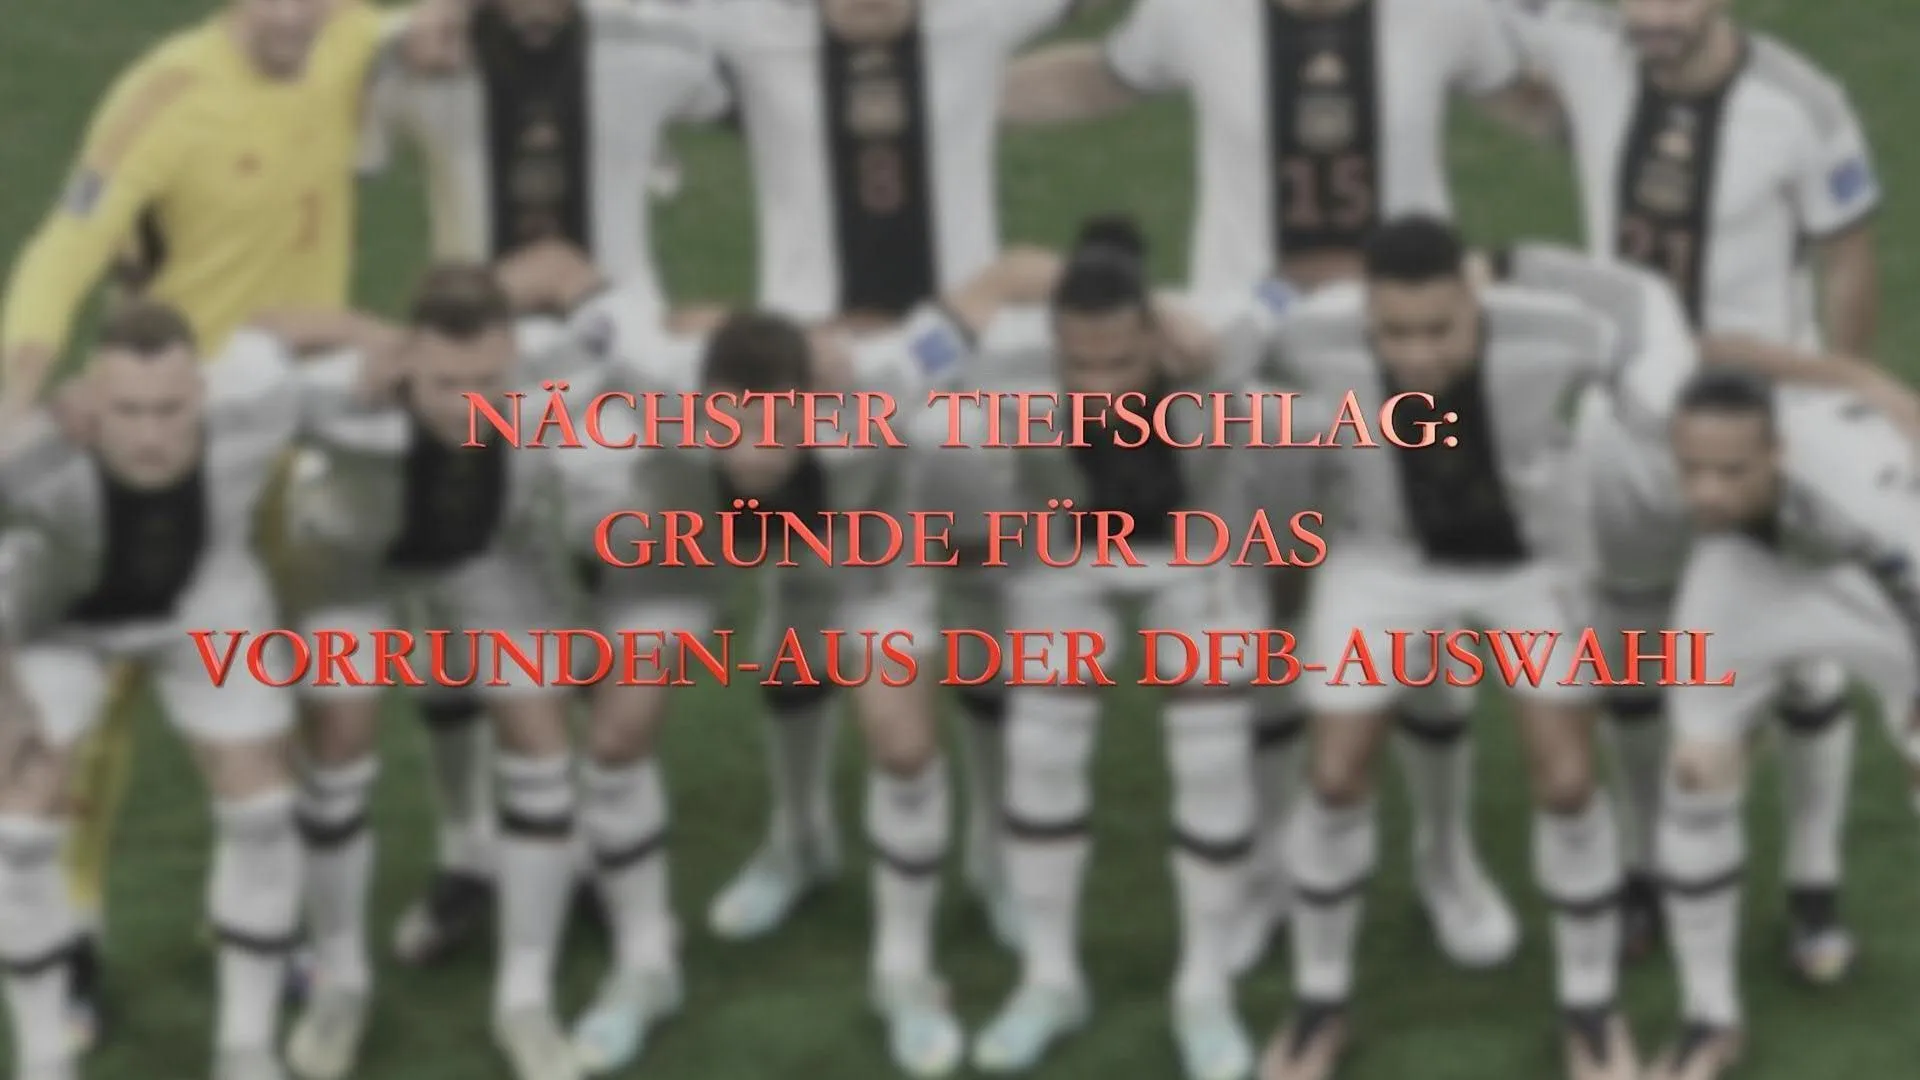 Nächster Tiefschlag: Gründe für das Vorrunden-Aus der DFB-Auswahl